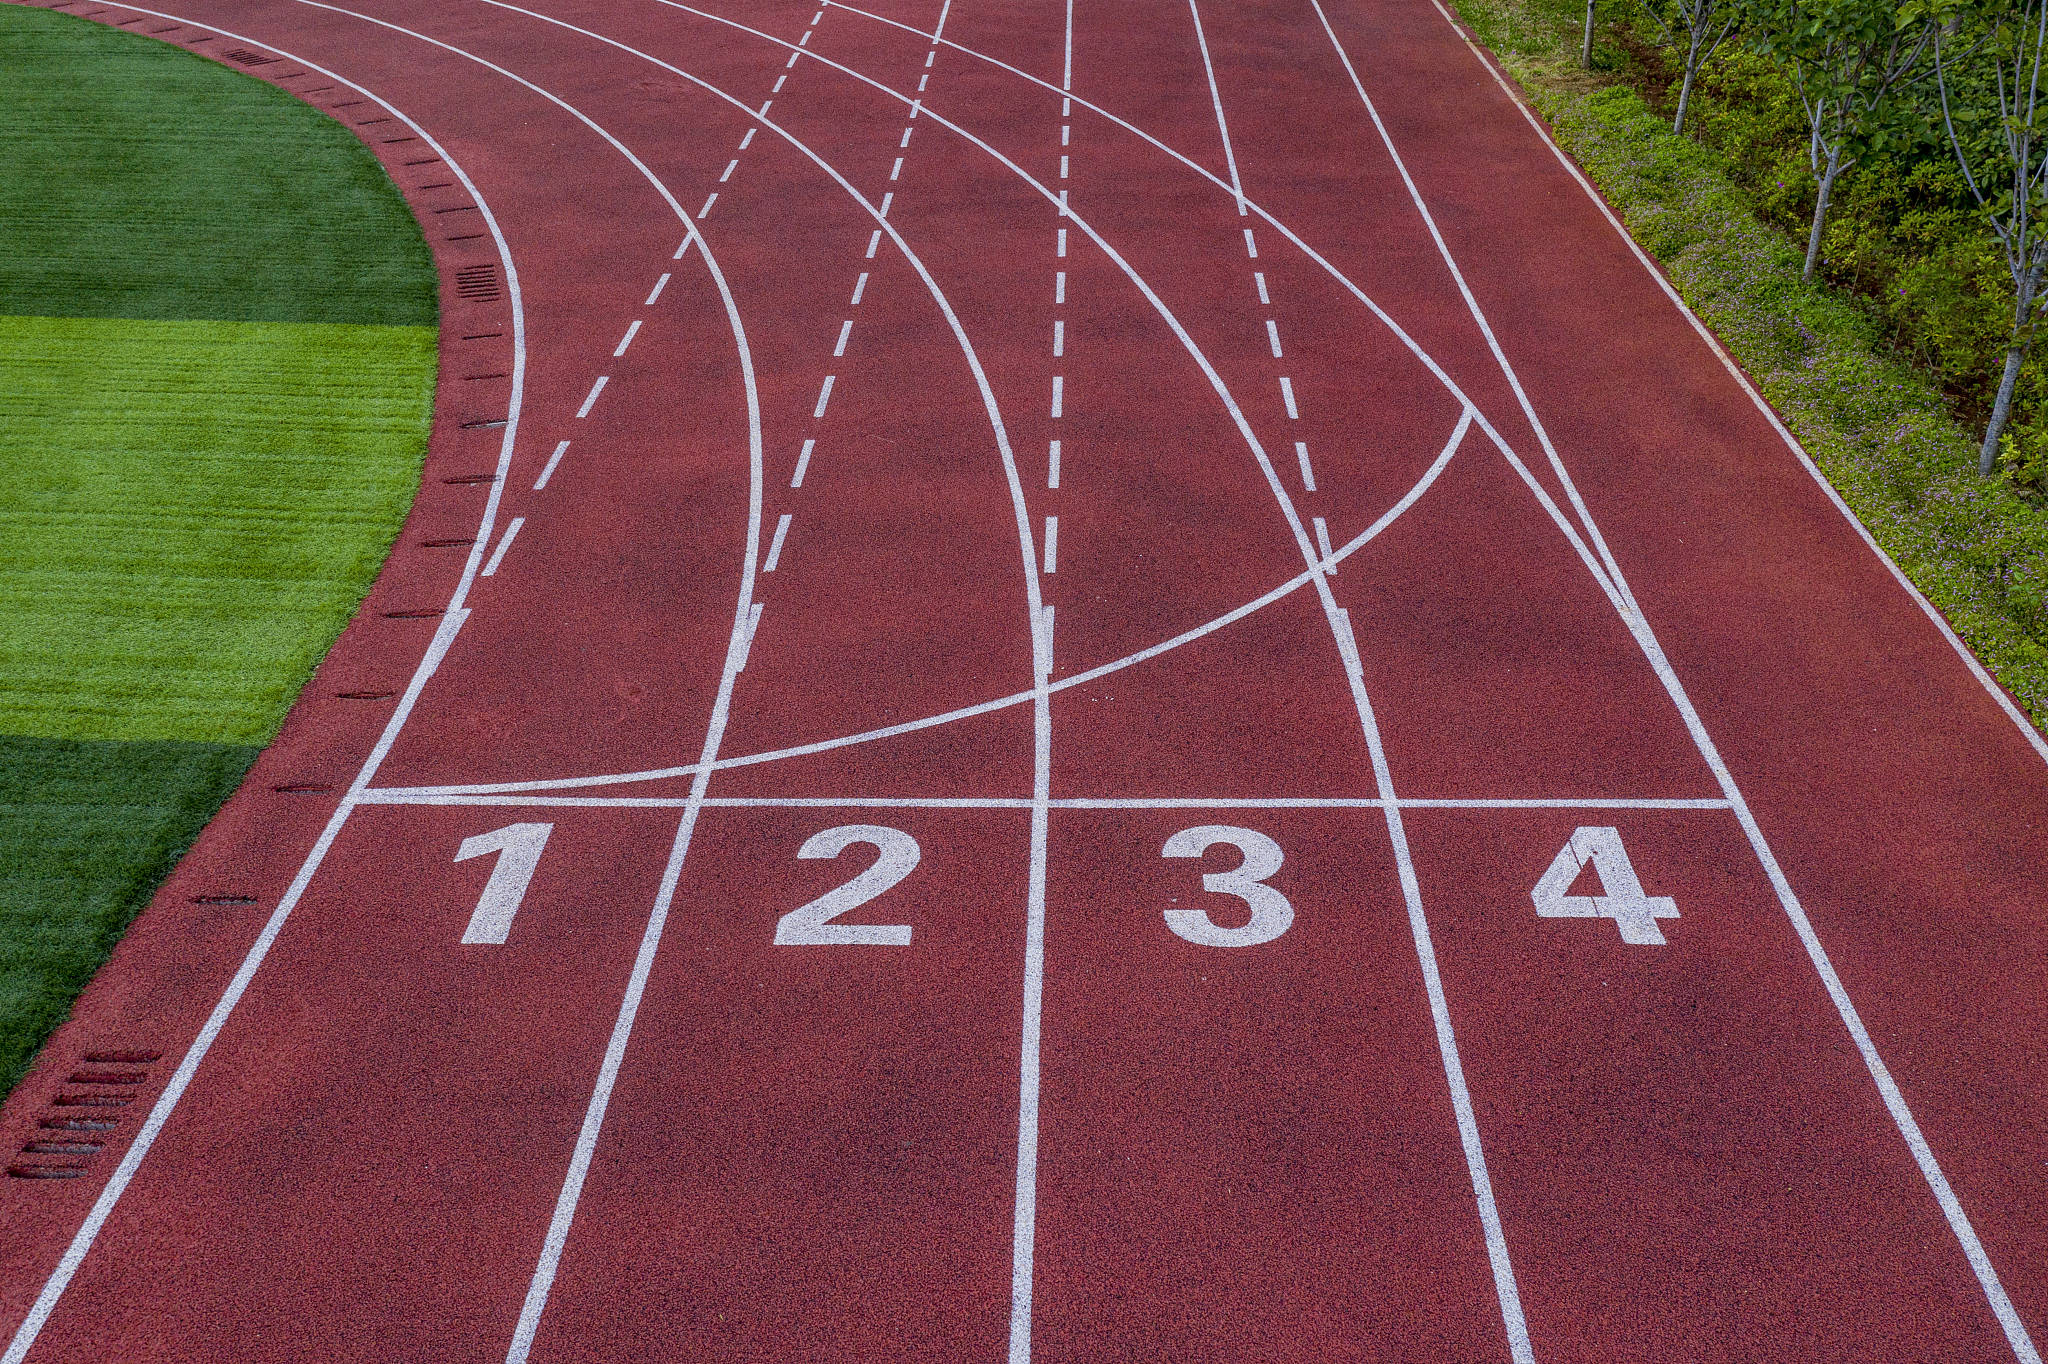 首先,我们要了解一下iaaf认可的四种主要跑道规格:400米标准跑道,200